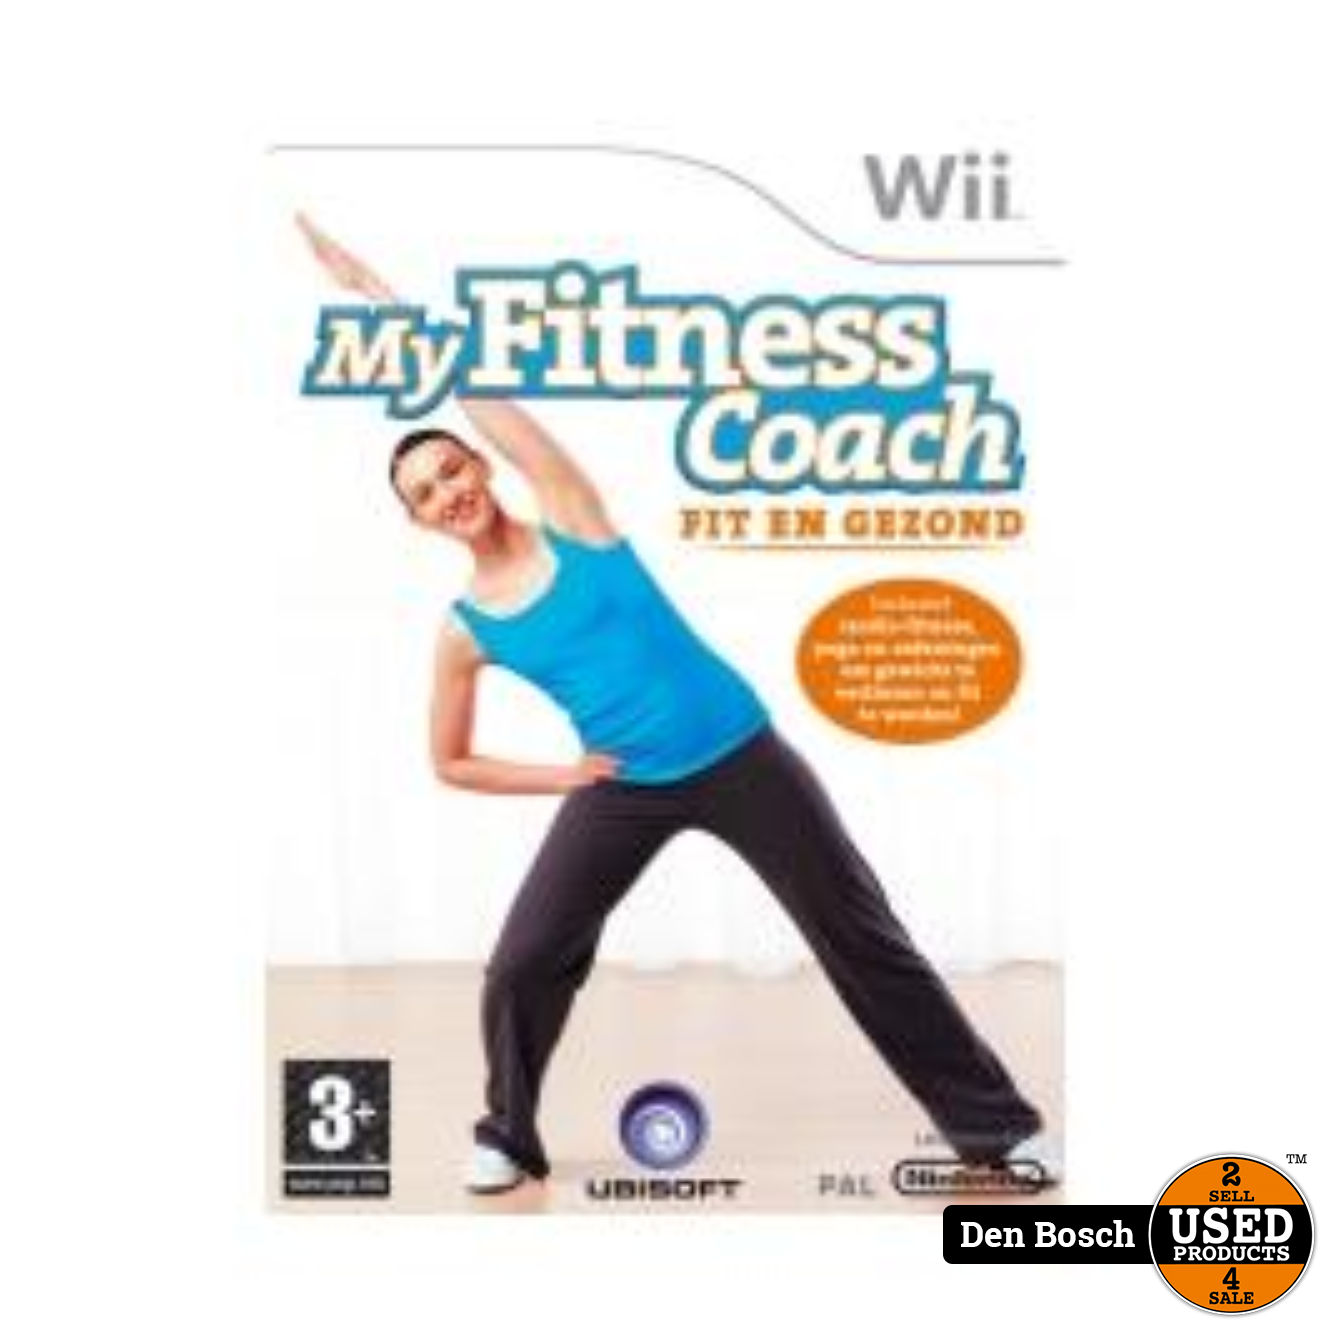 afstuderen vervorming Spit My Fitness Coach Fit en Gezond - Wii Game - Used Products Den Bosch